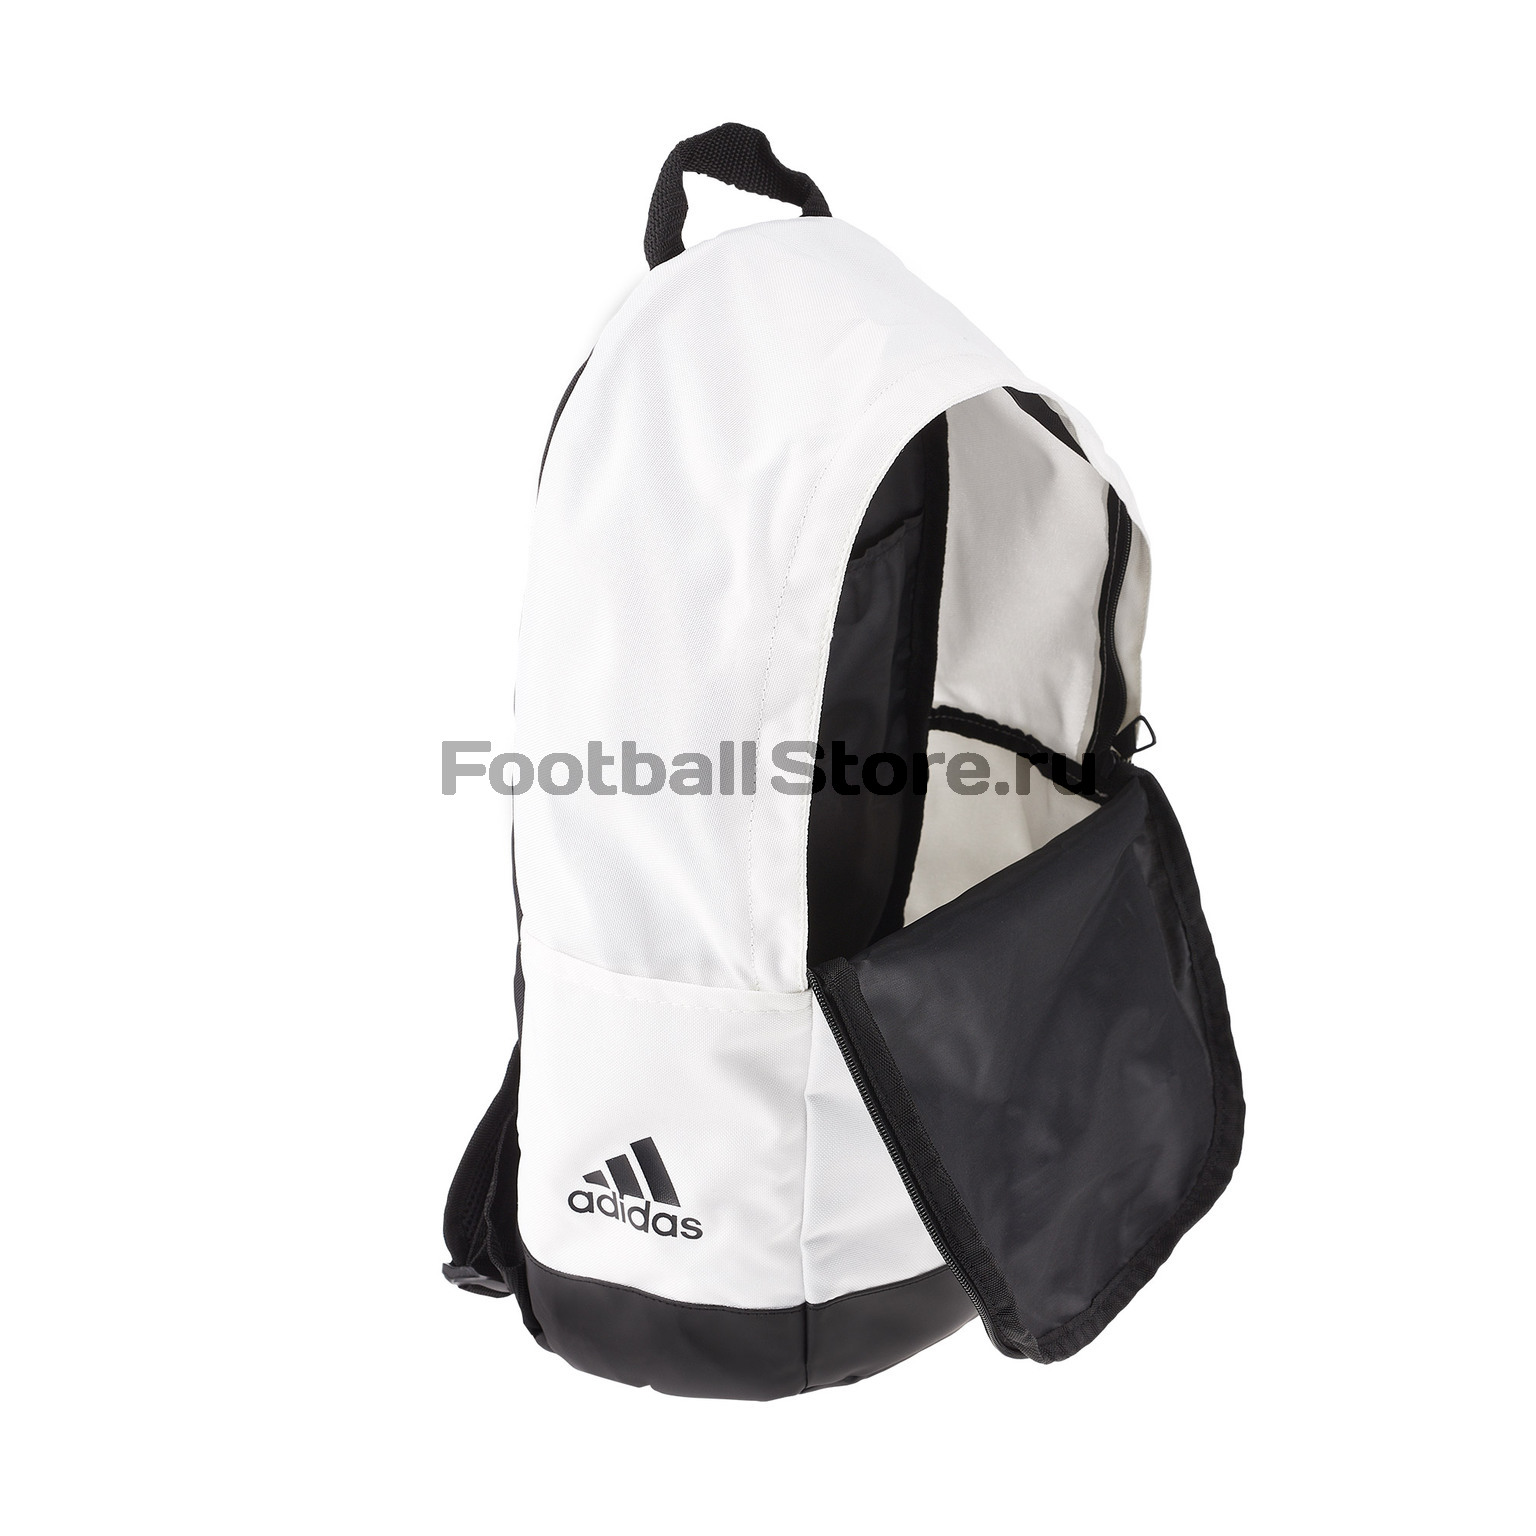 Рюкзак Adidas Real Madrid CY5597